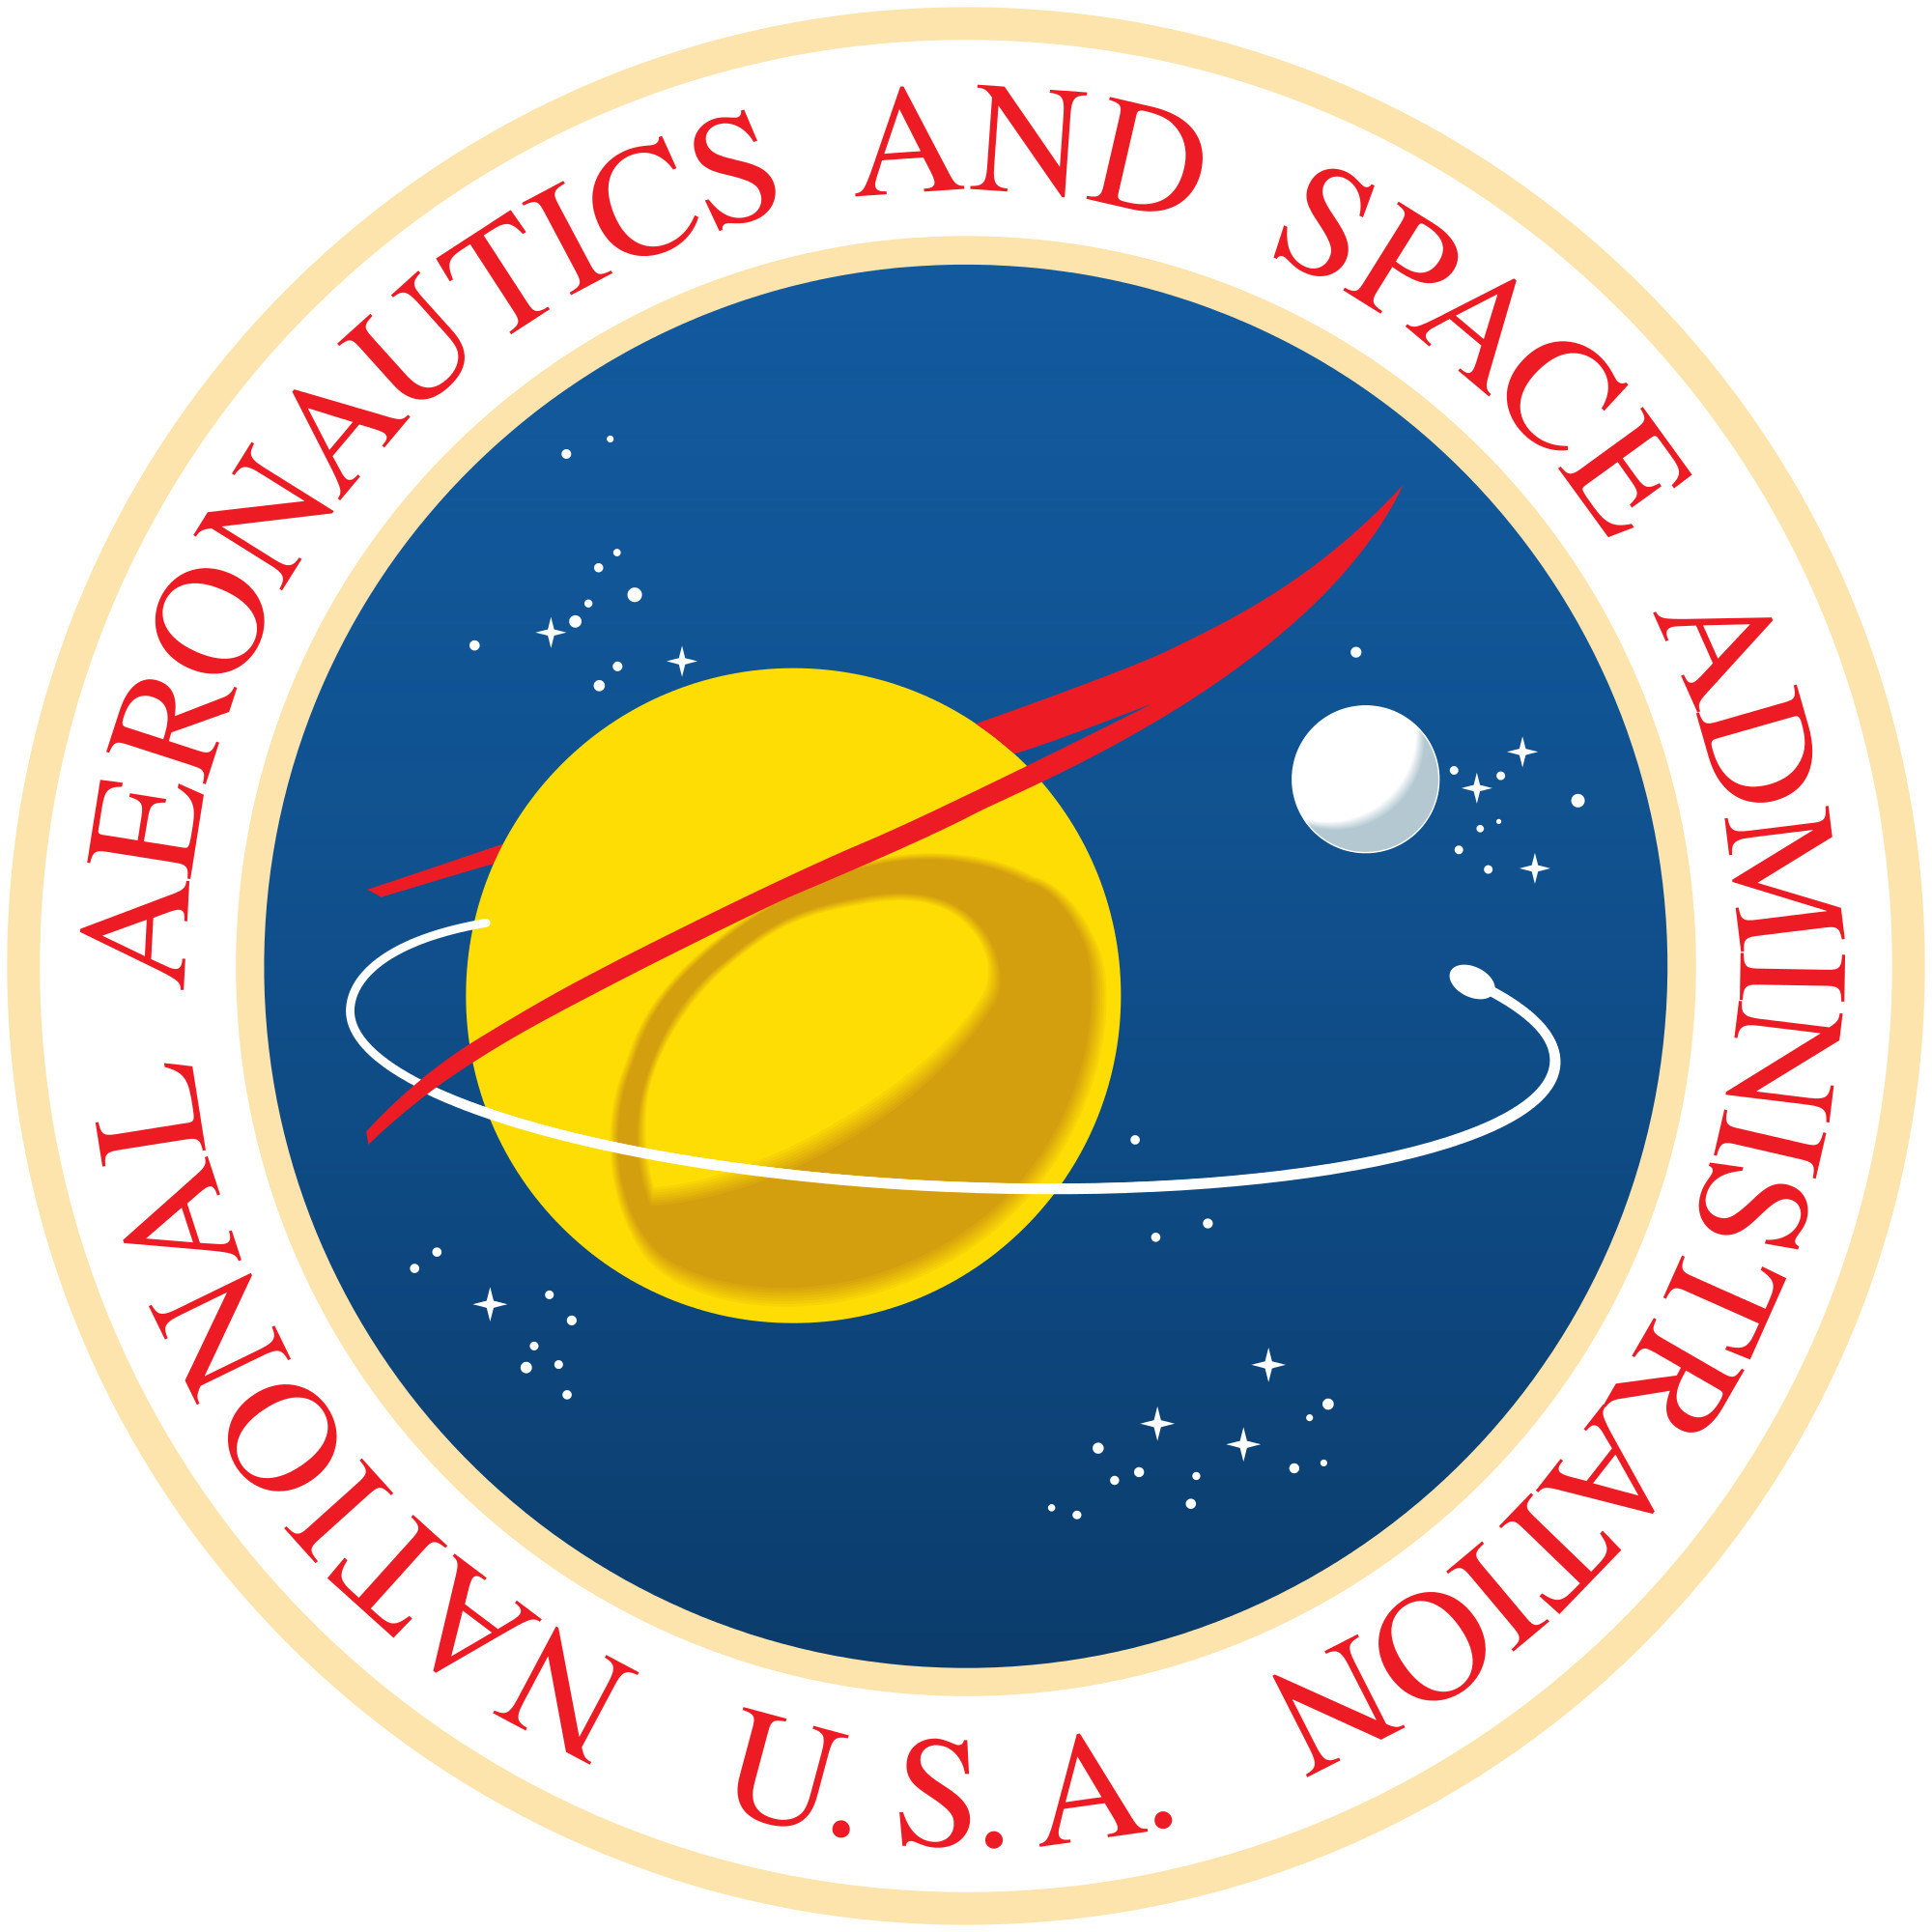 2000x2000 NASA insignia - Wikipedia, the free encyclopedia